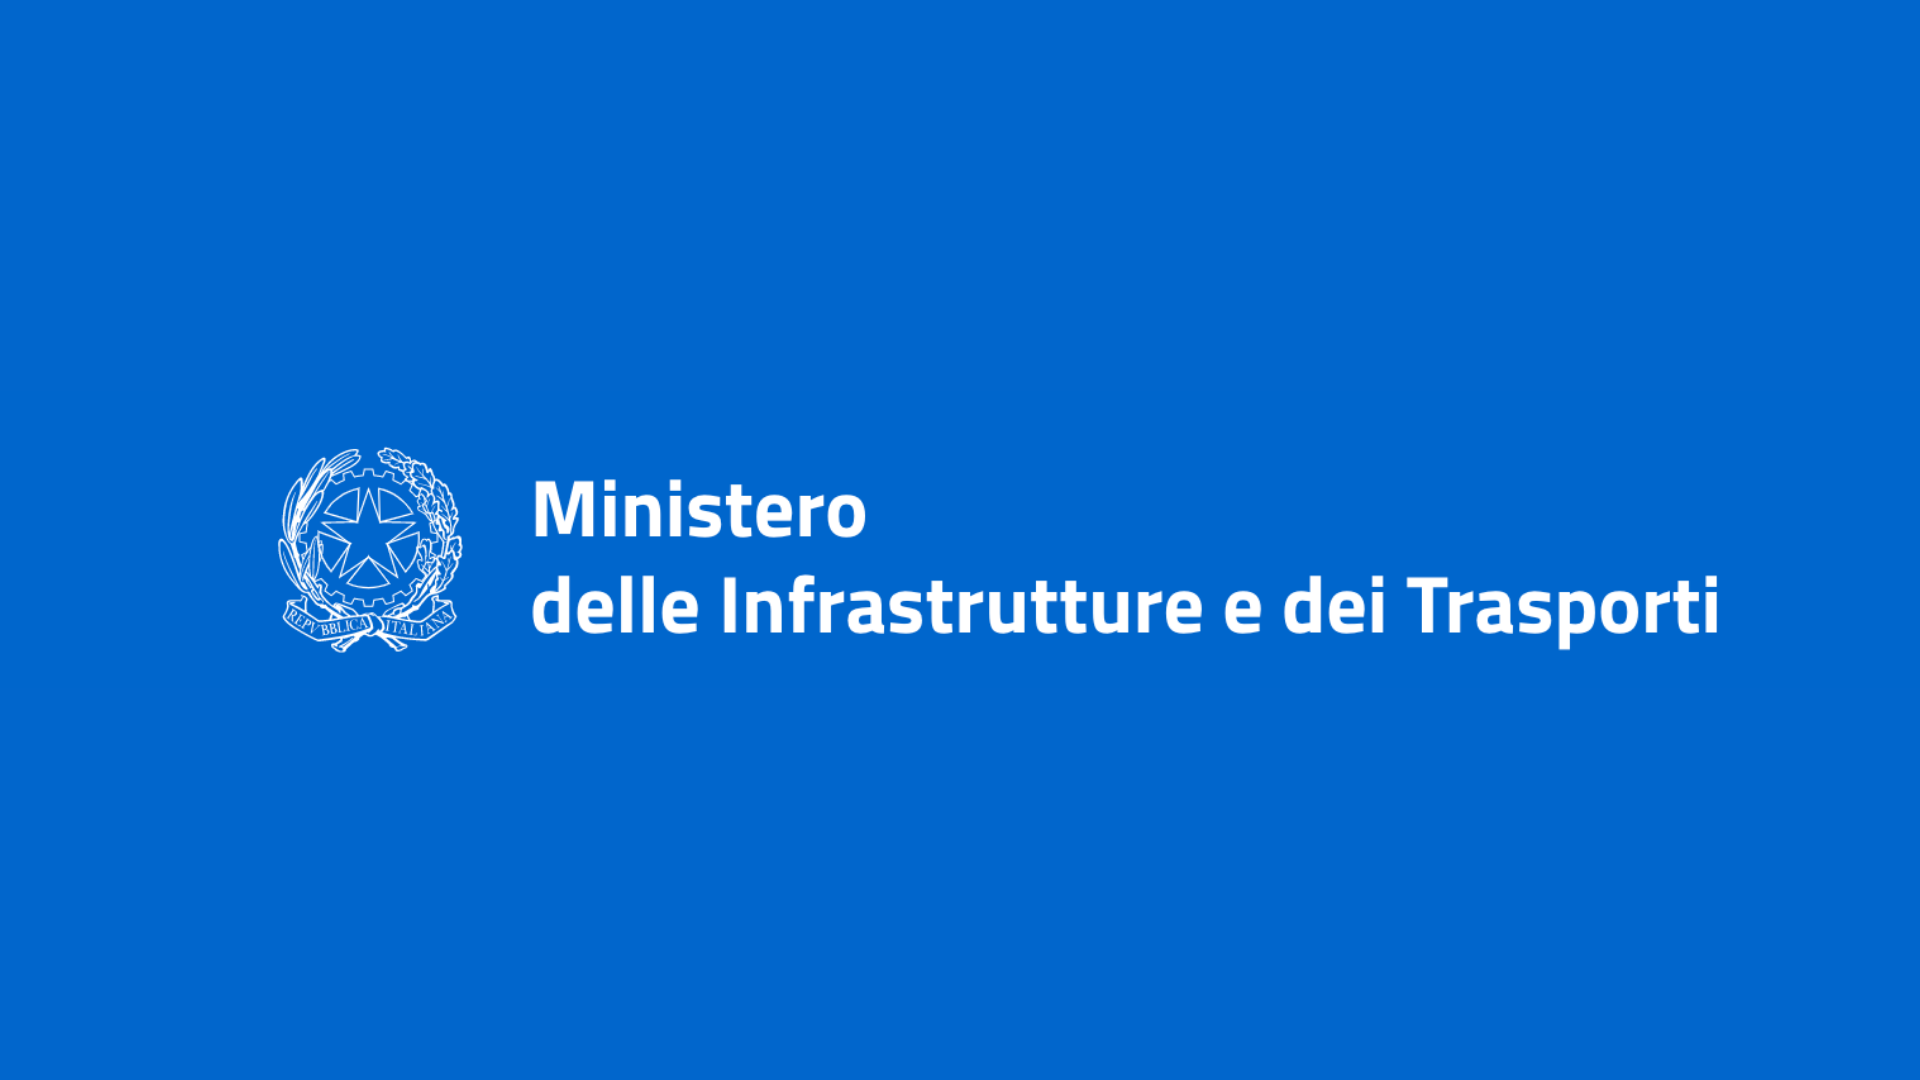 Ministero infrastrutture e tasporti v2